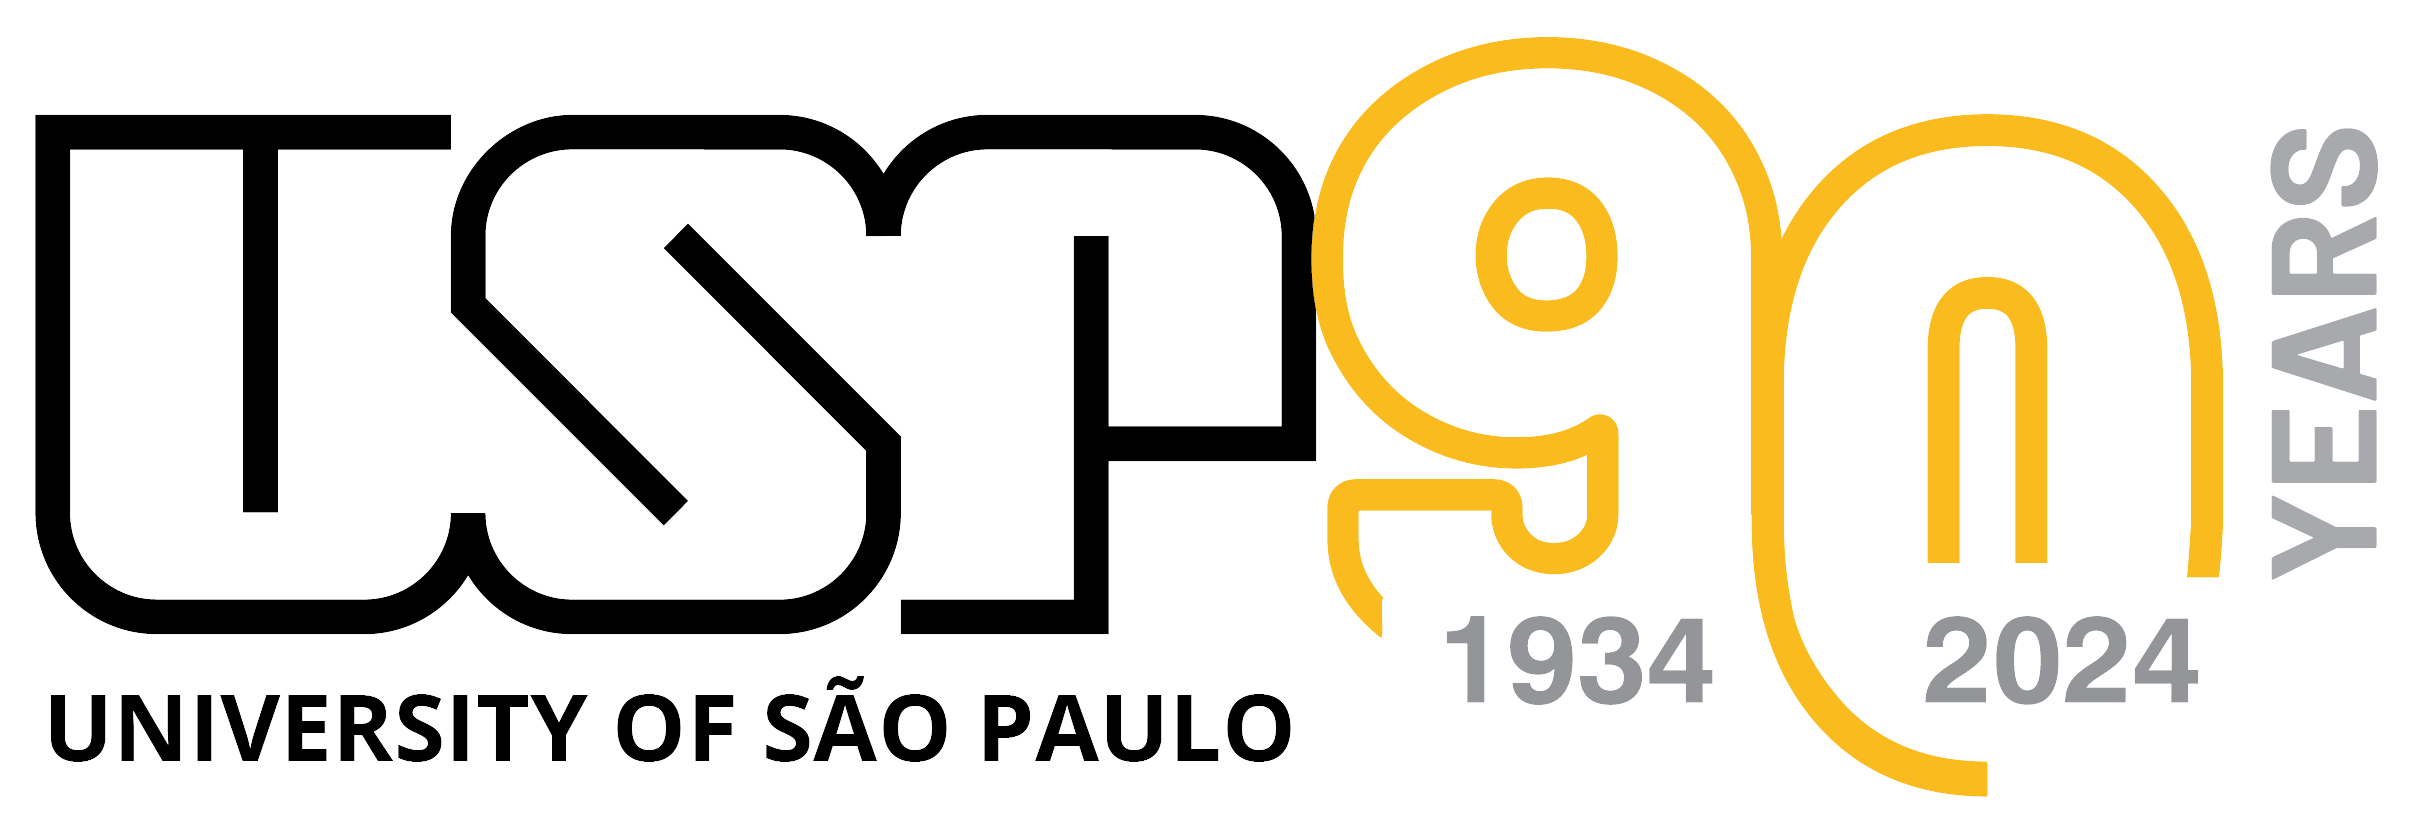 University of São Paulo - USP logo